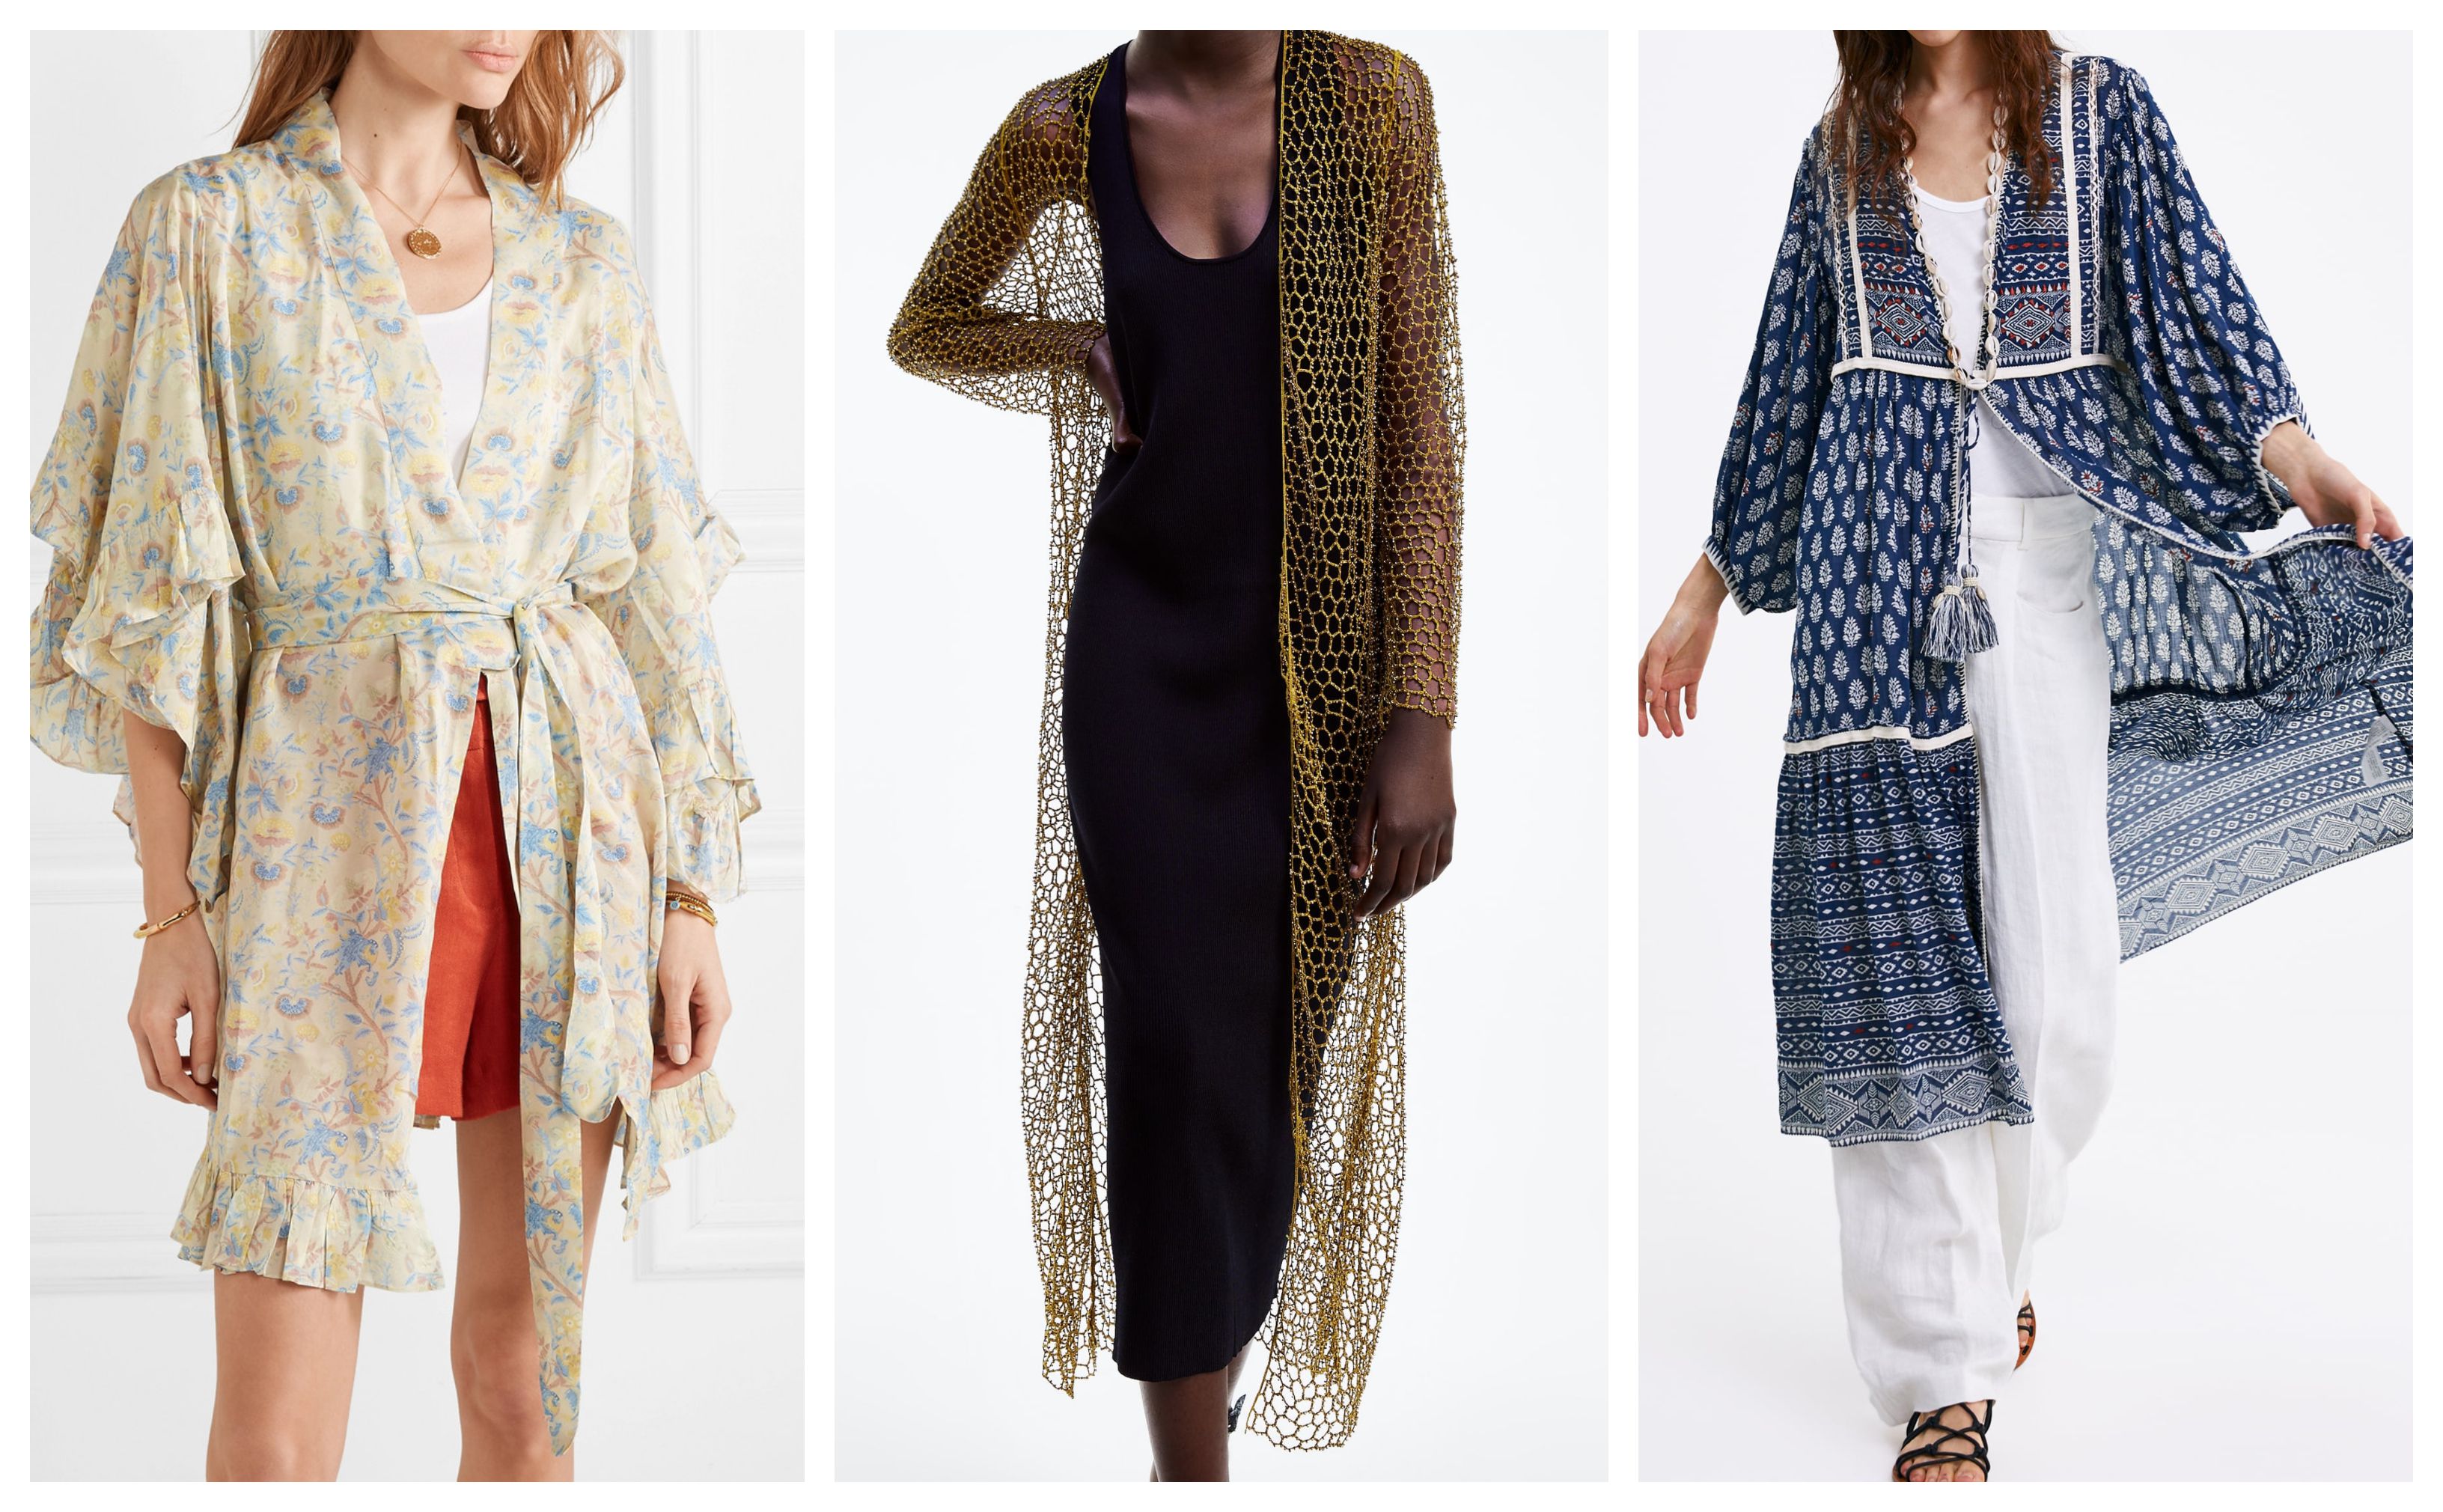 Sve što vam treba za stylish ljeto je - jedan dobar kimono!